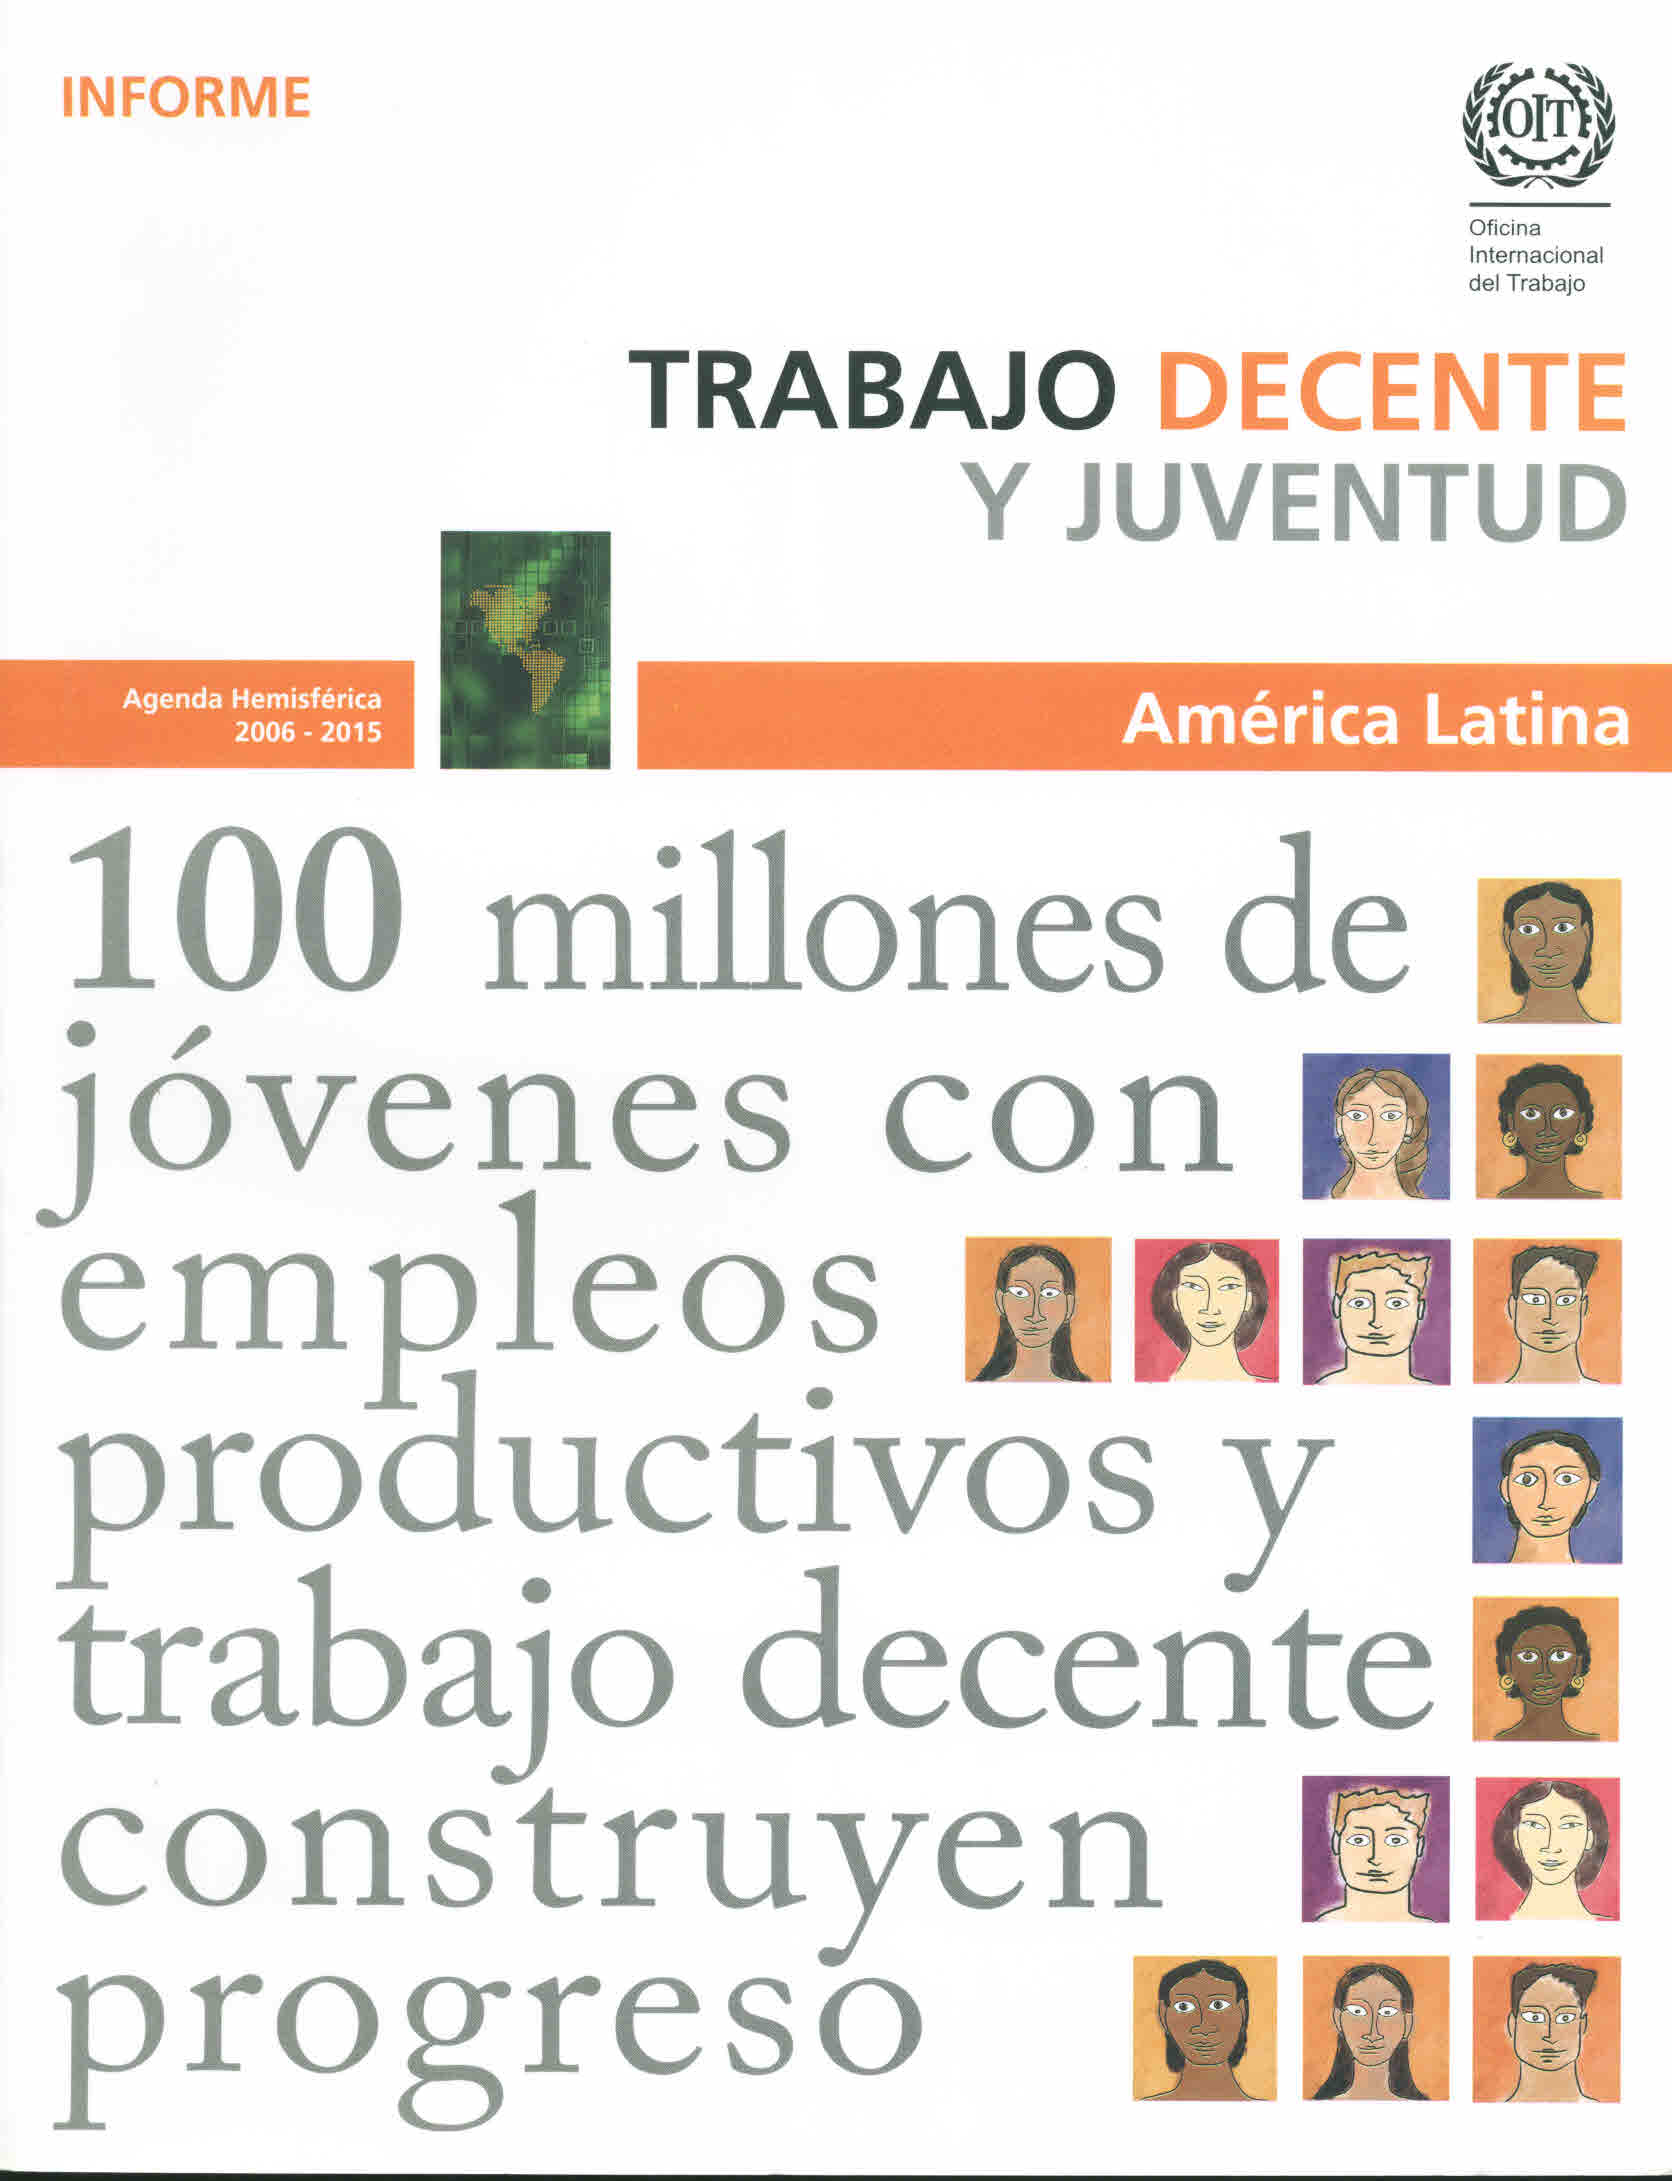 Trabajo decente y juventud. América Latina. Informe